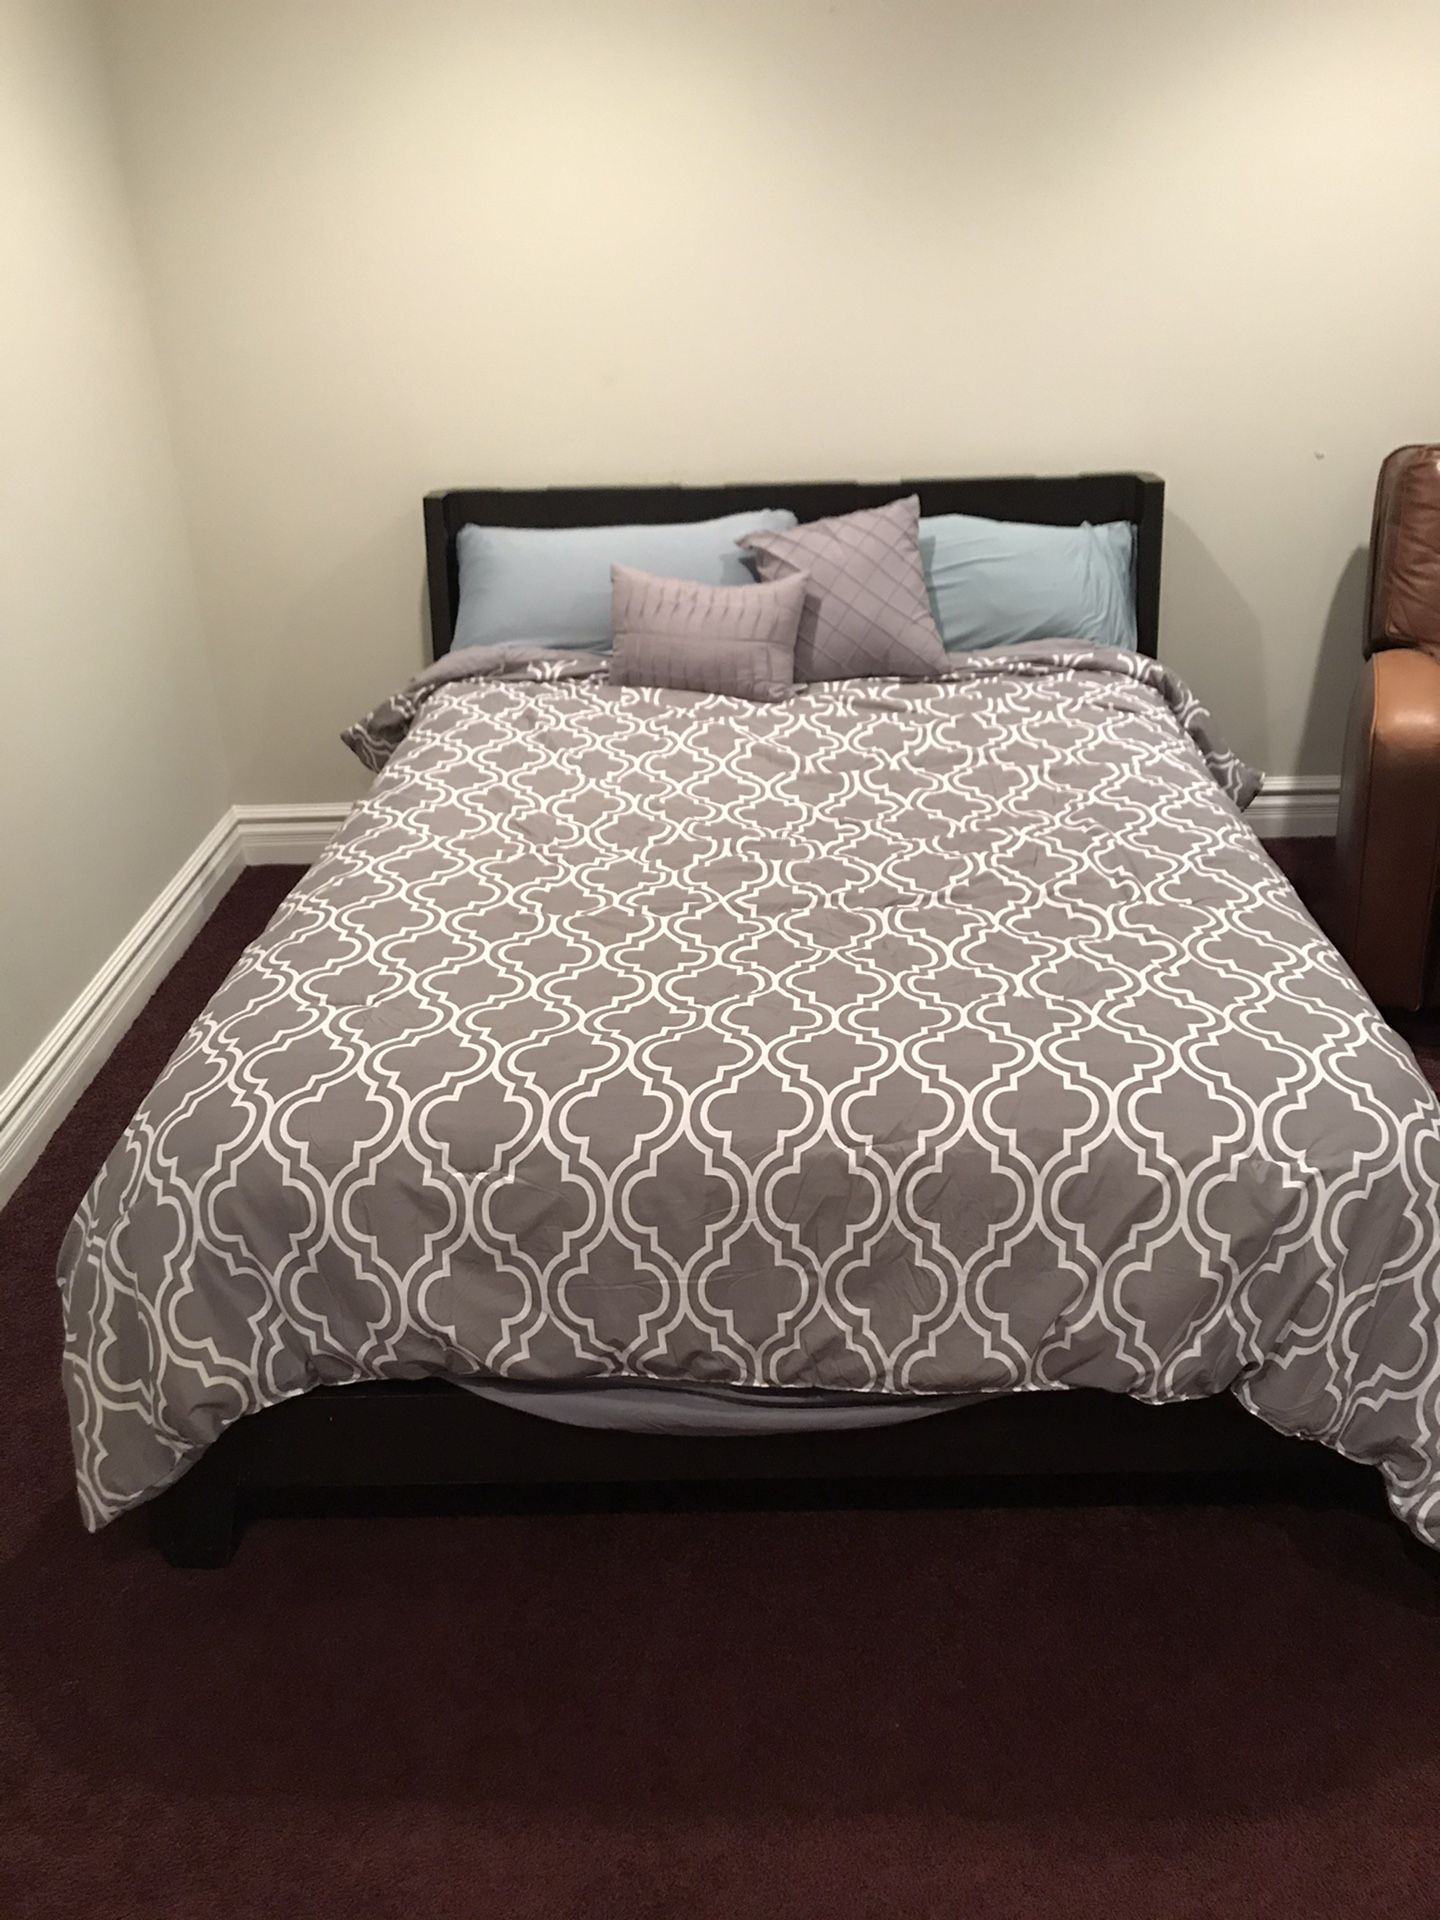 Queen size Bed Frame + Mattress (both)